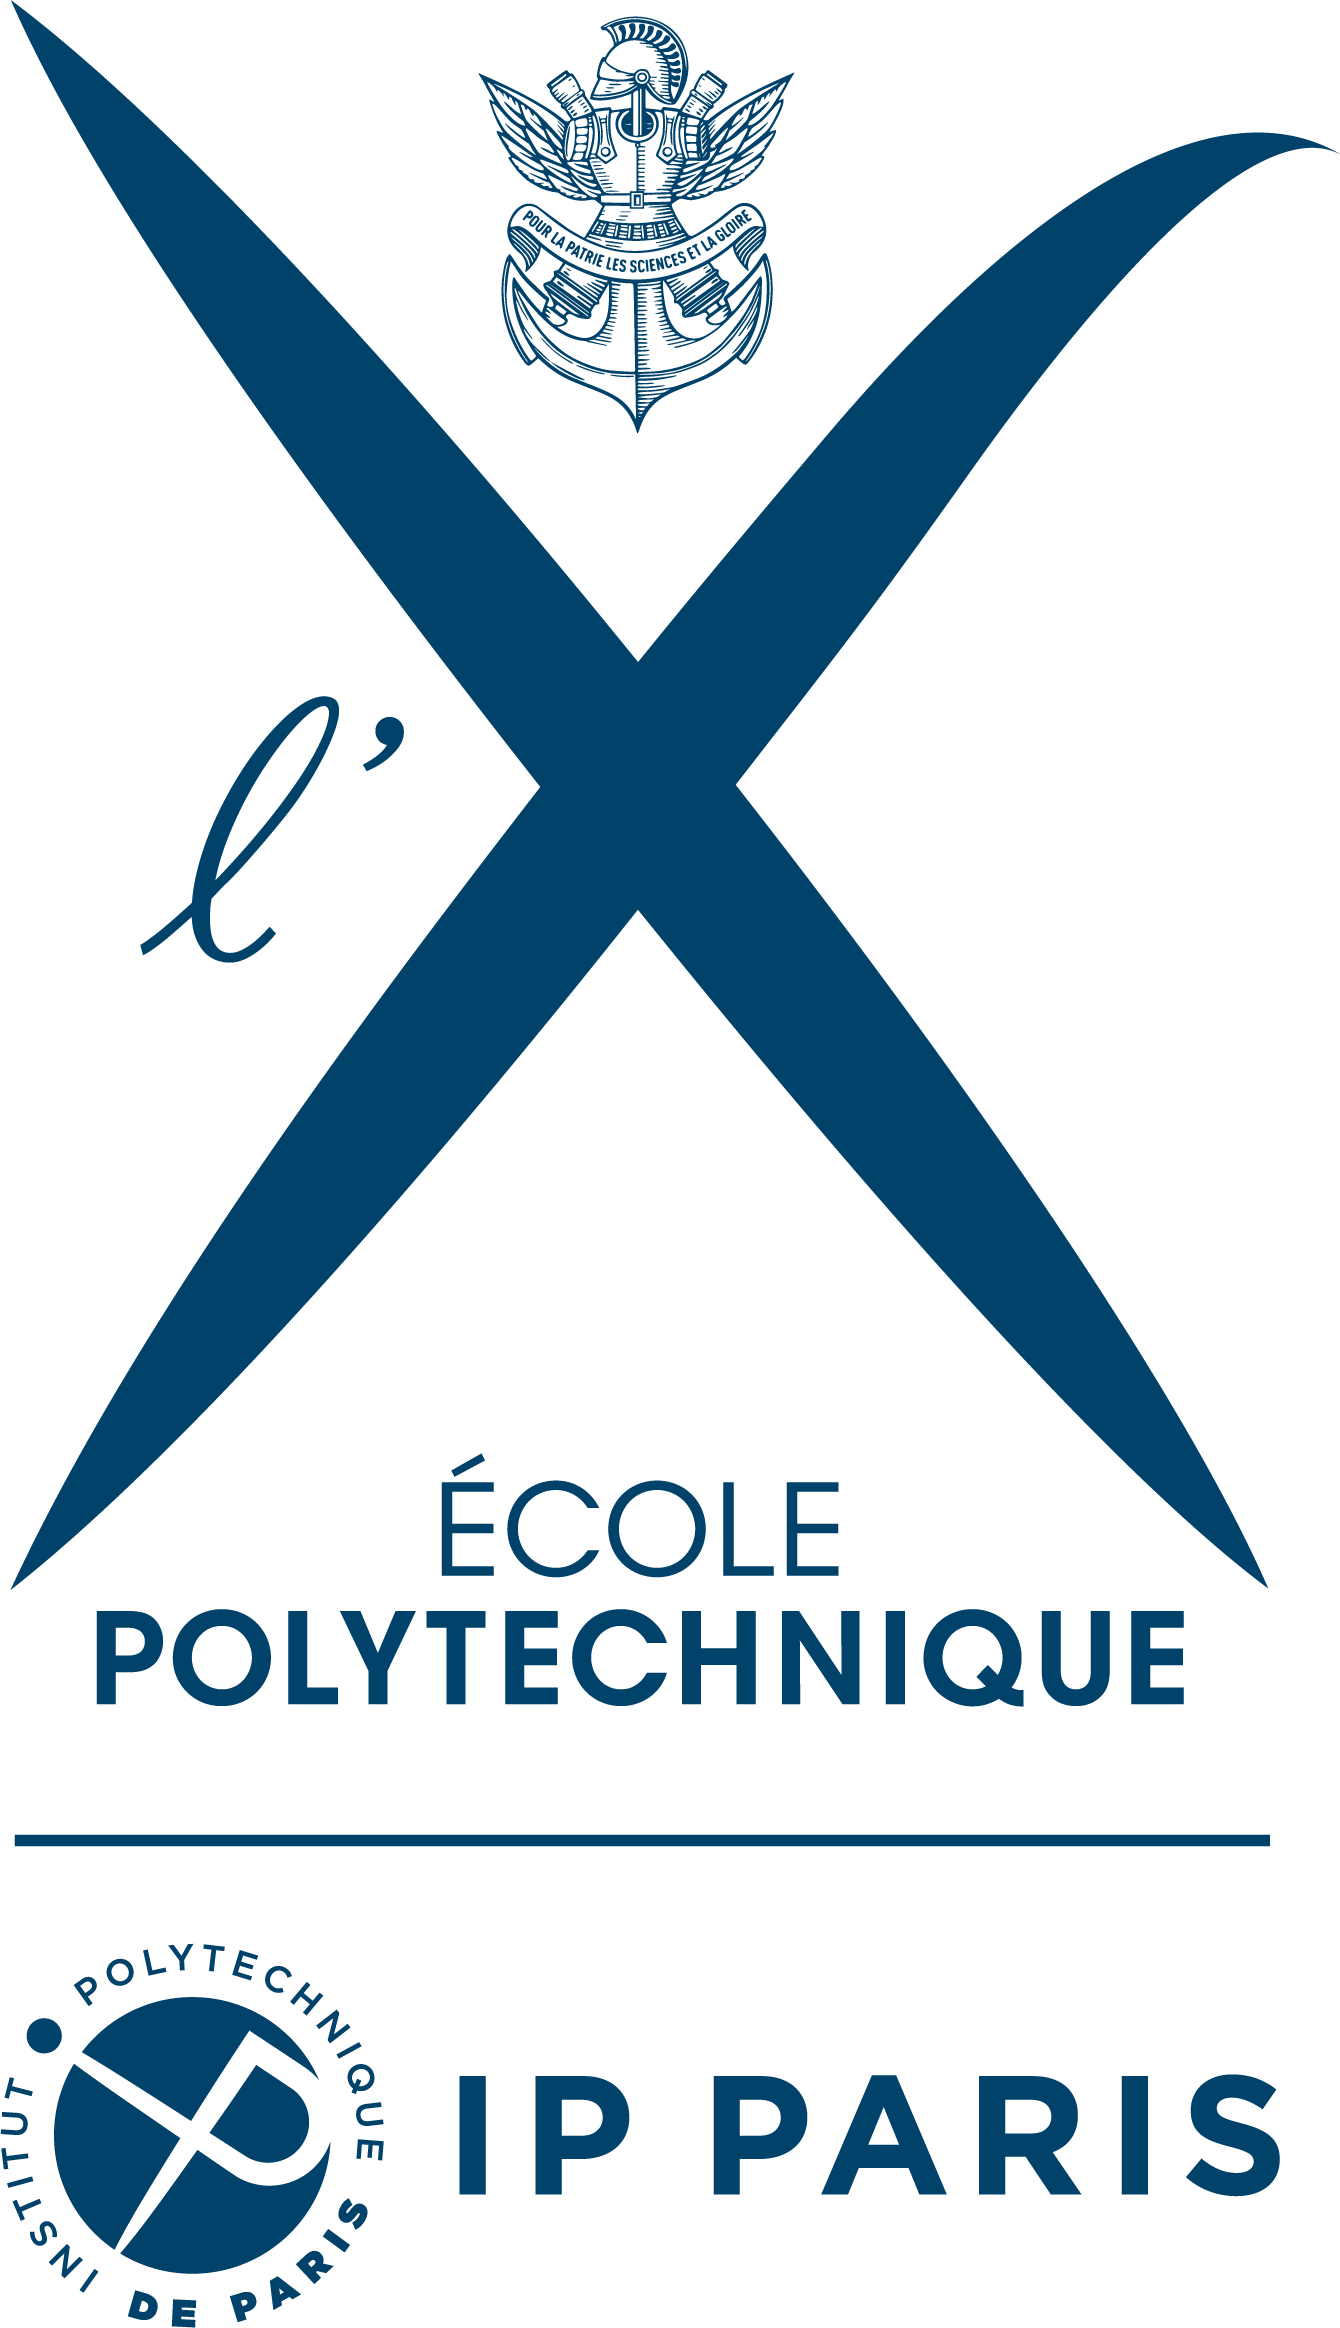 Ecole polytechnique